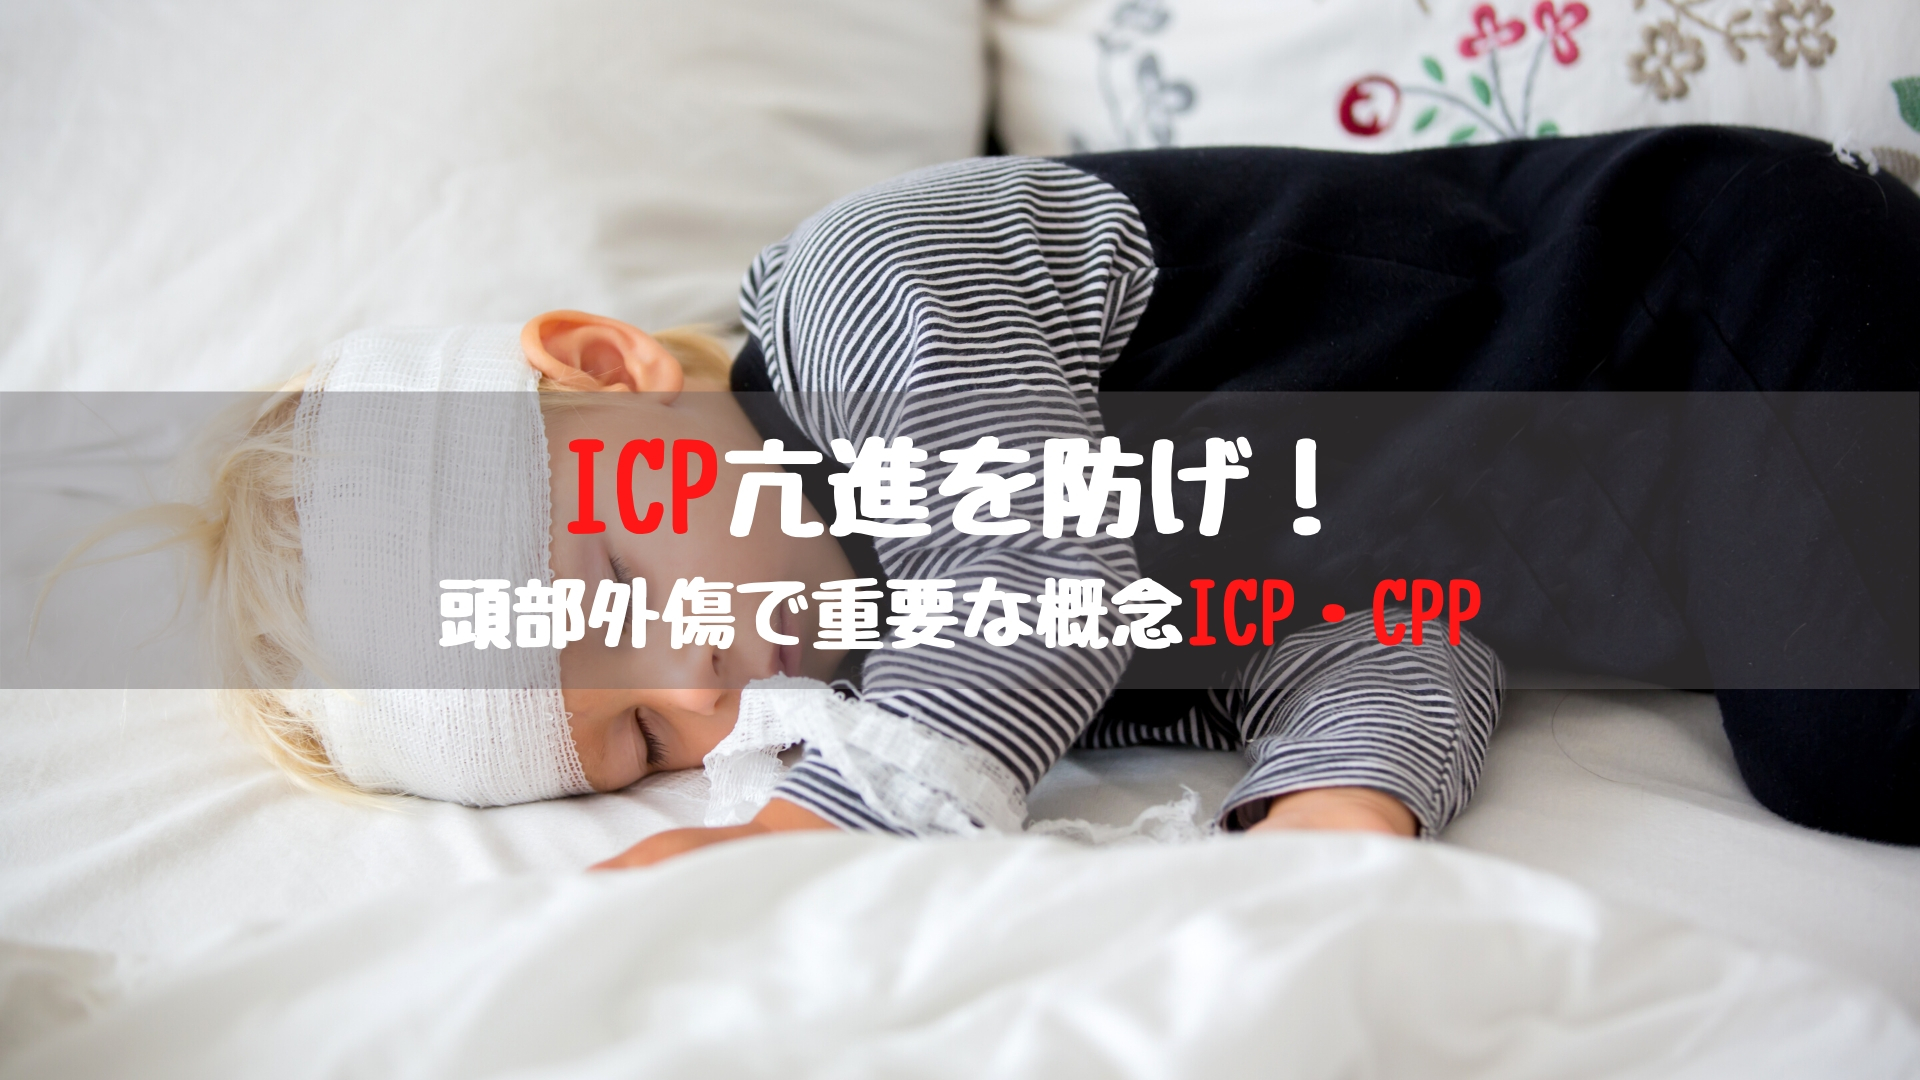 疑問 Icp亢進を防げ 頭部外傷で重要な概念icp Cpp 踊る救急医